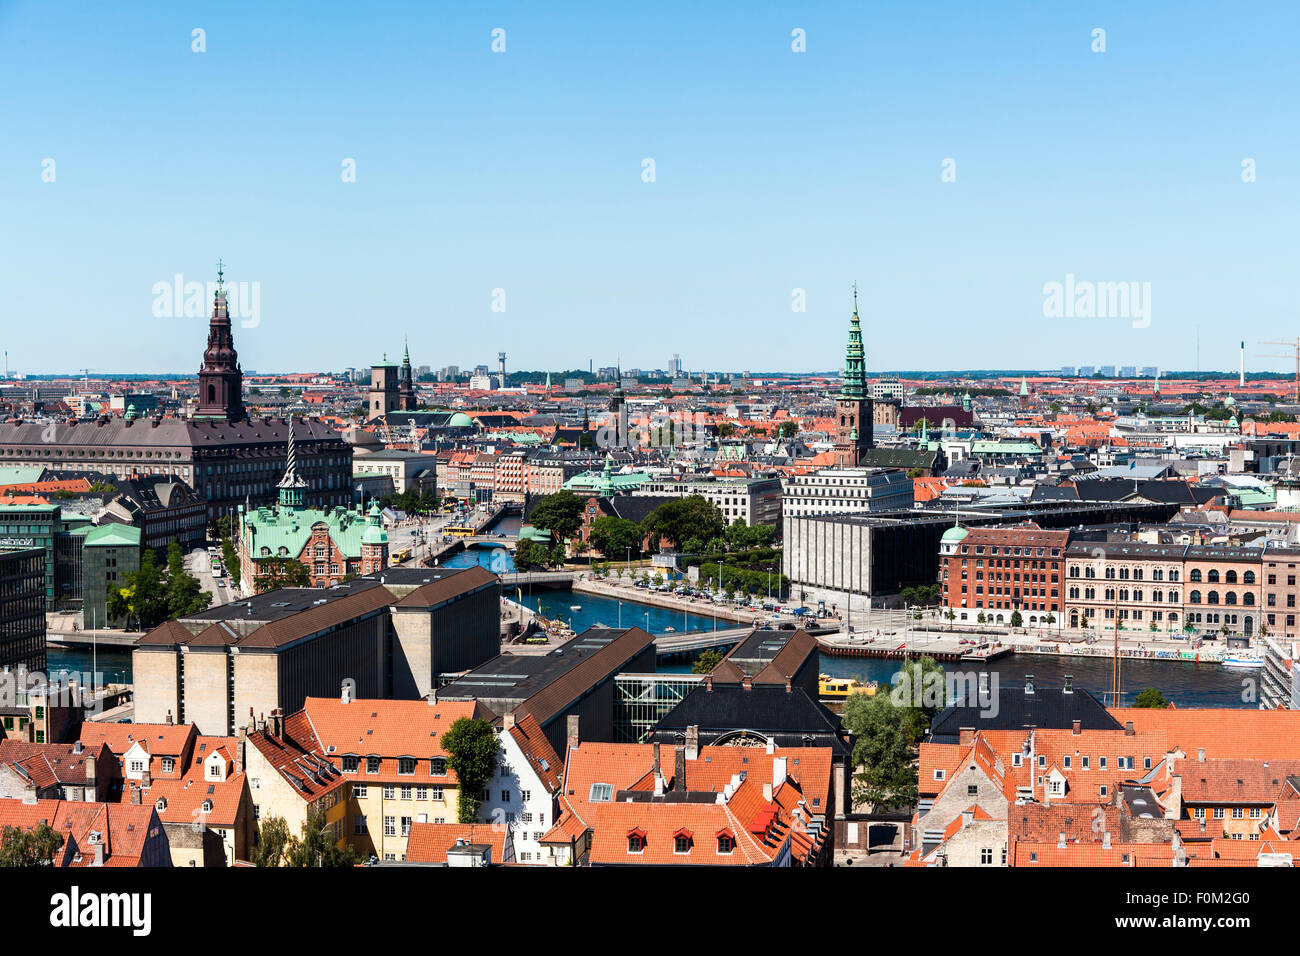 Center of Copenhagen, Denmark Stock Photo